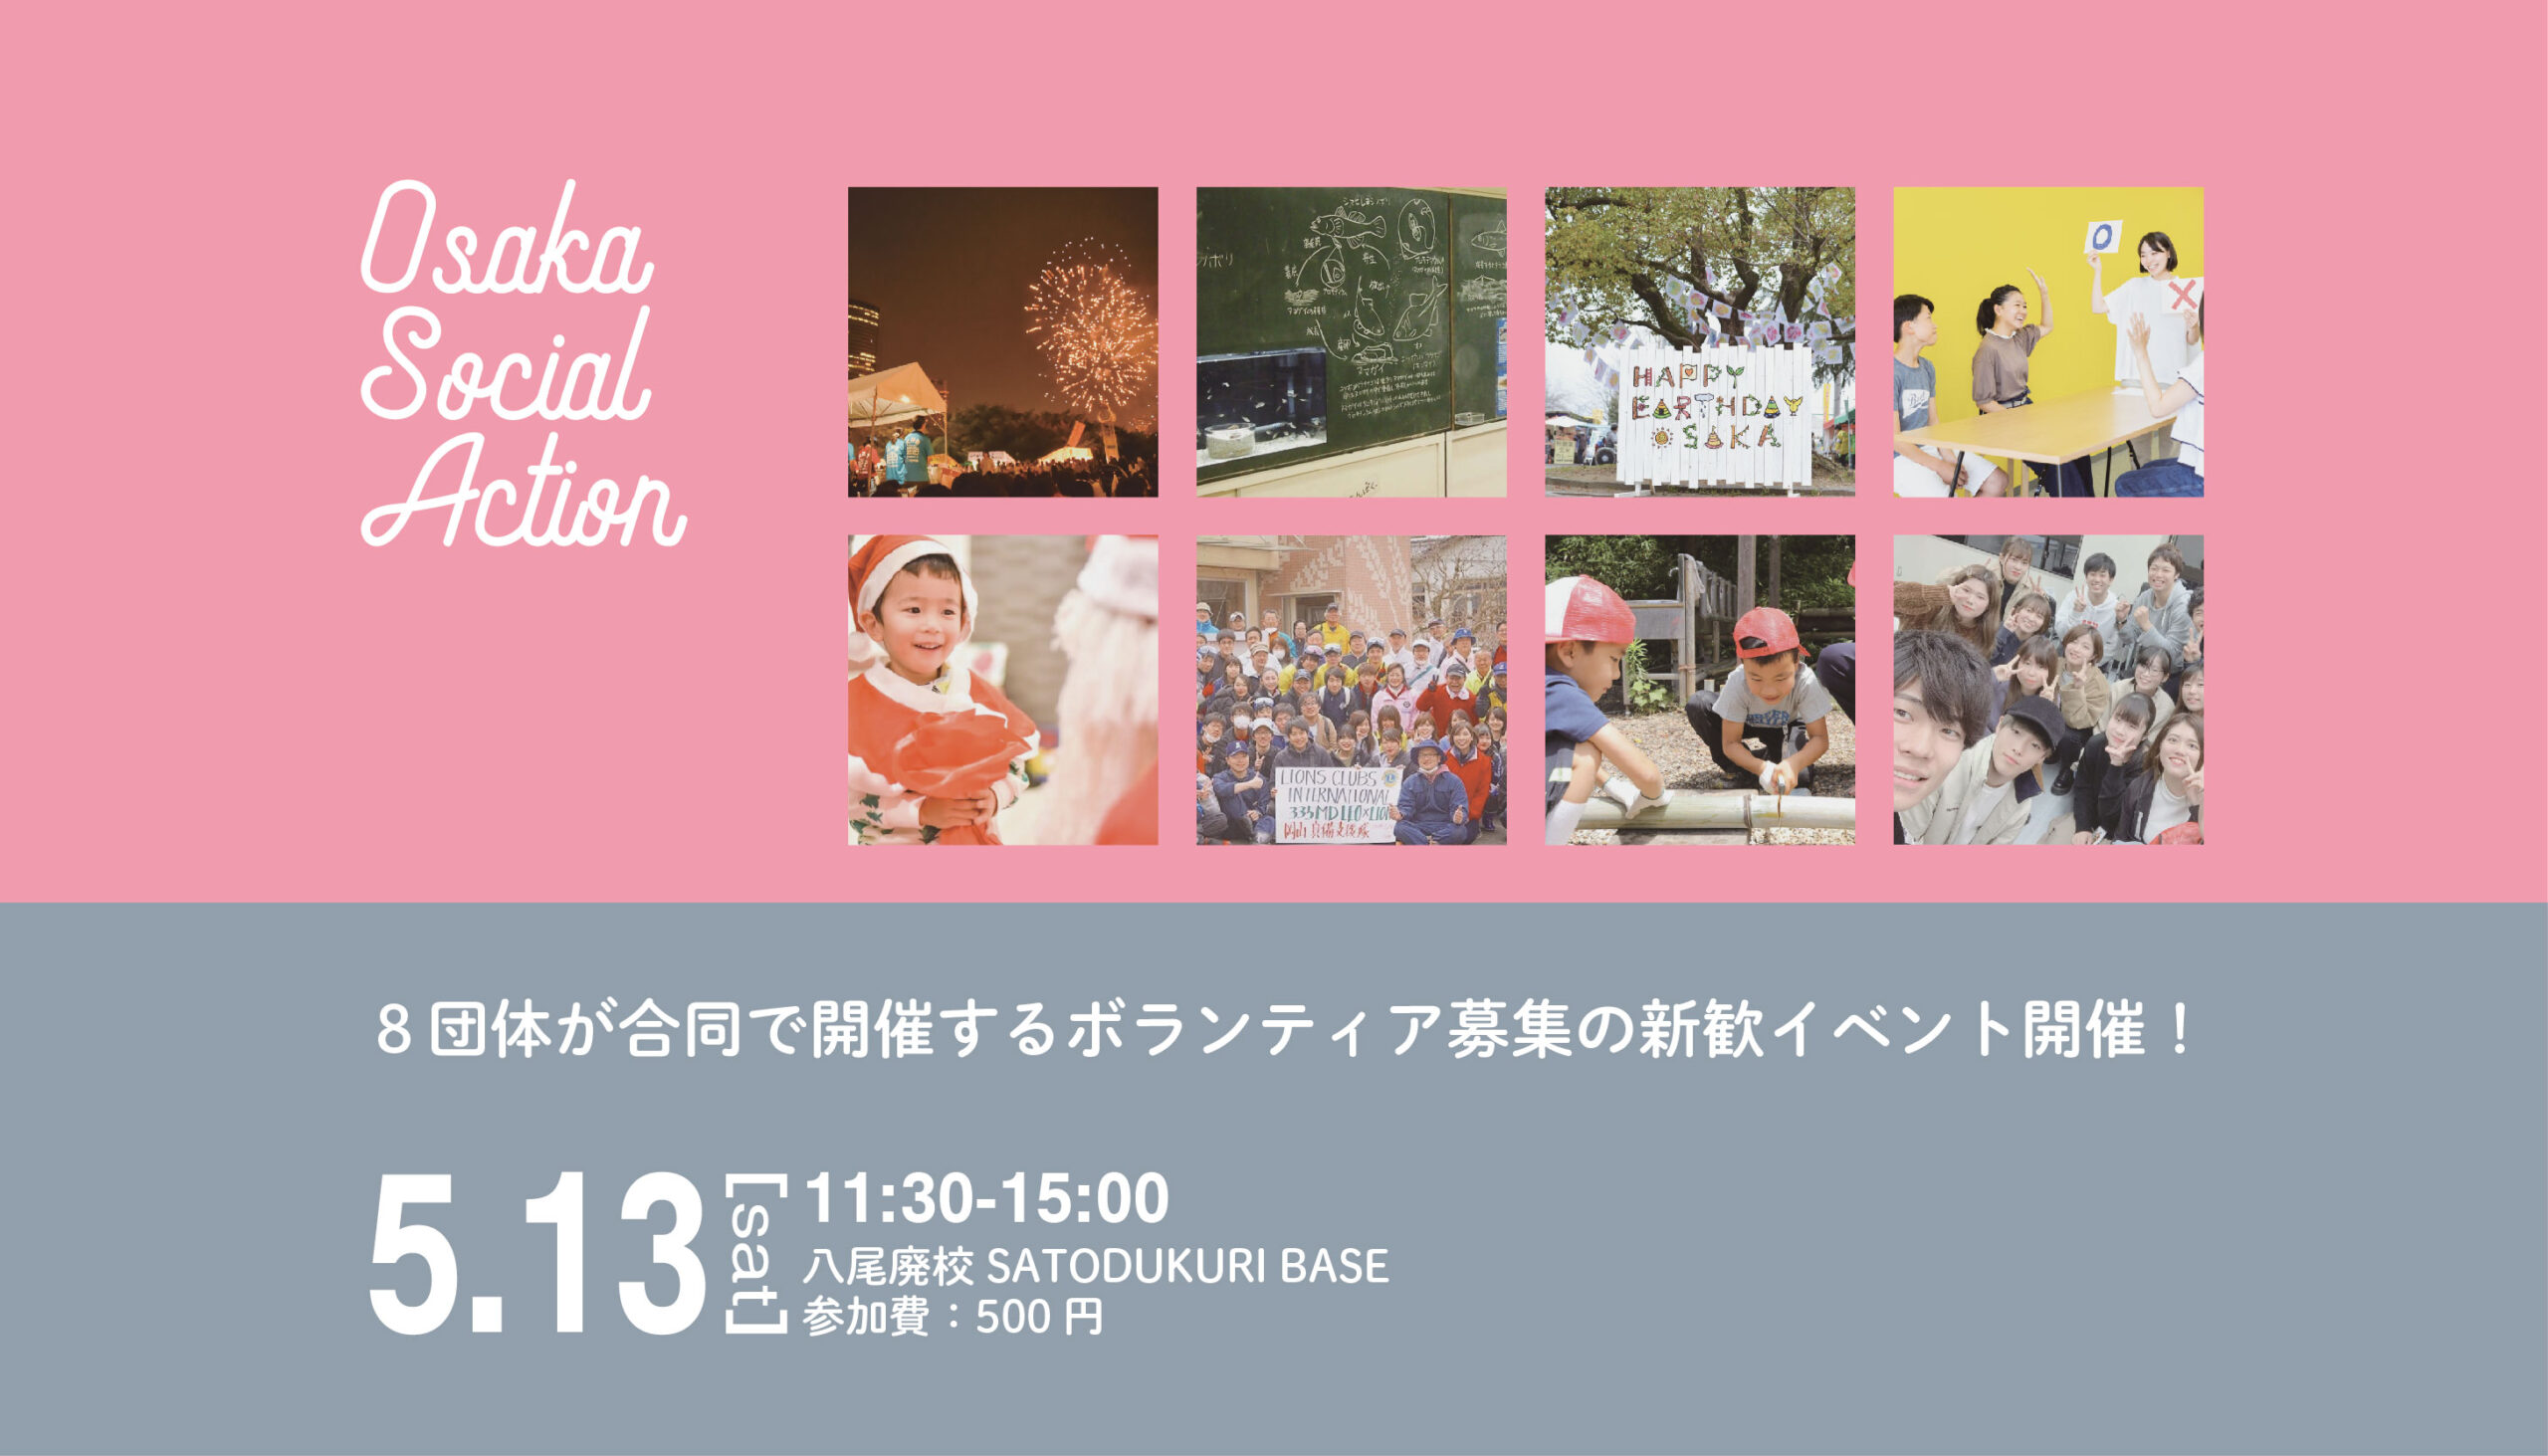 OsakaSocial Action 合同新歓2023開催